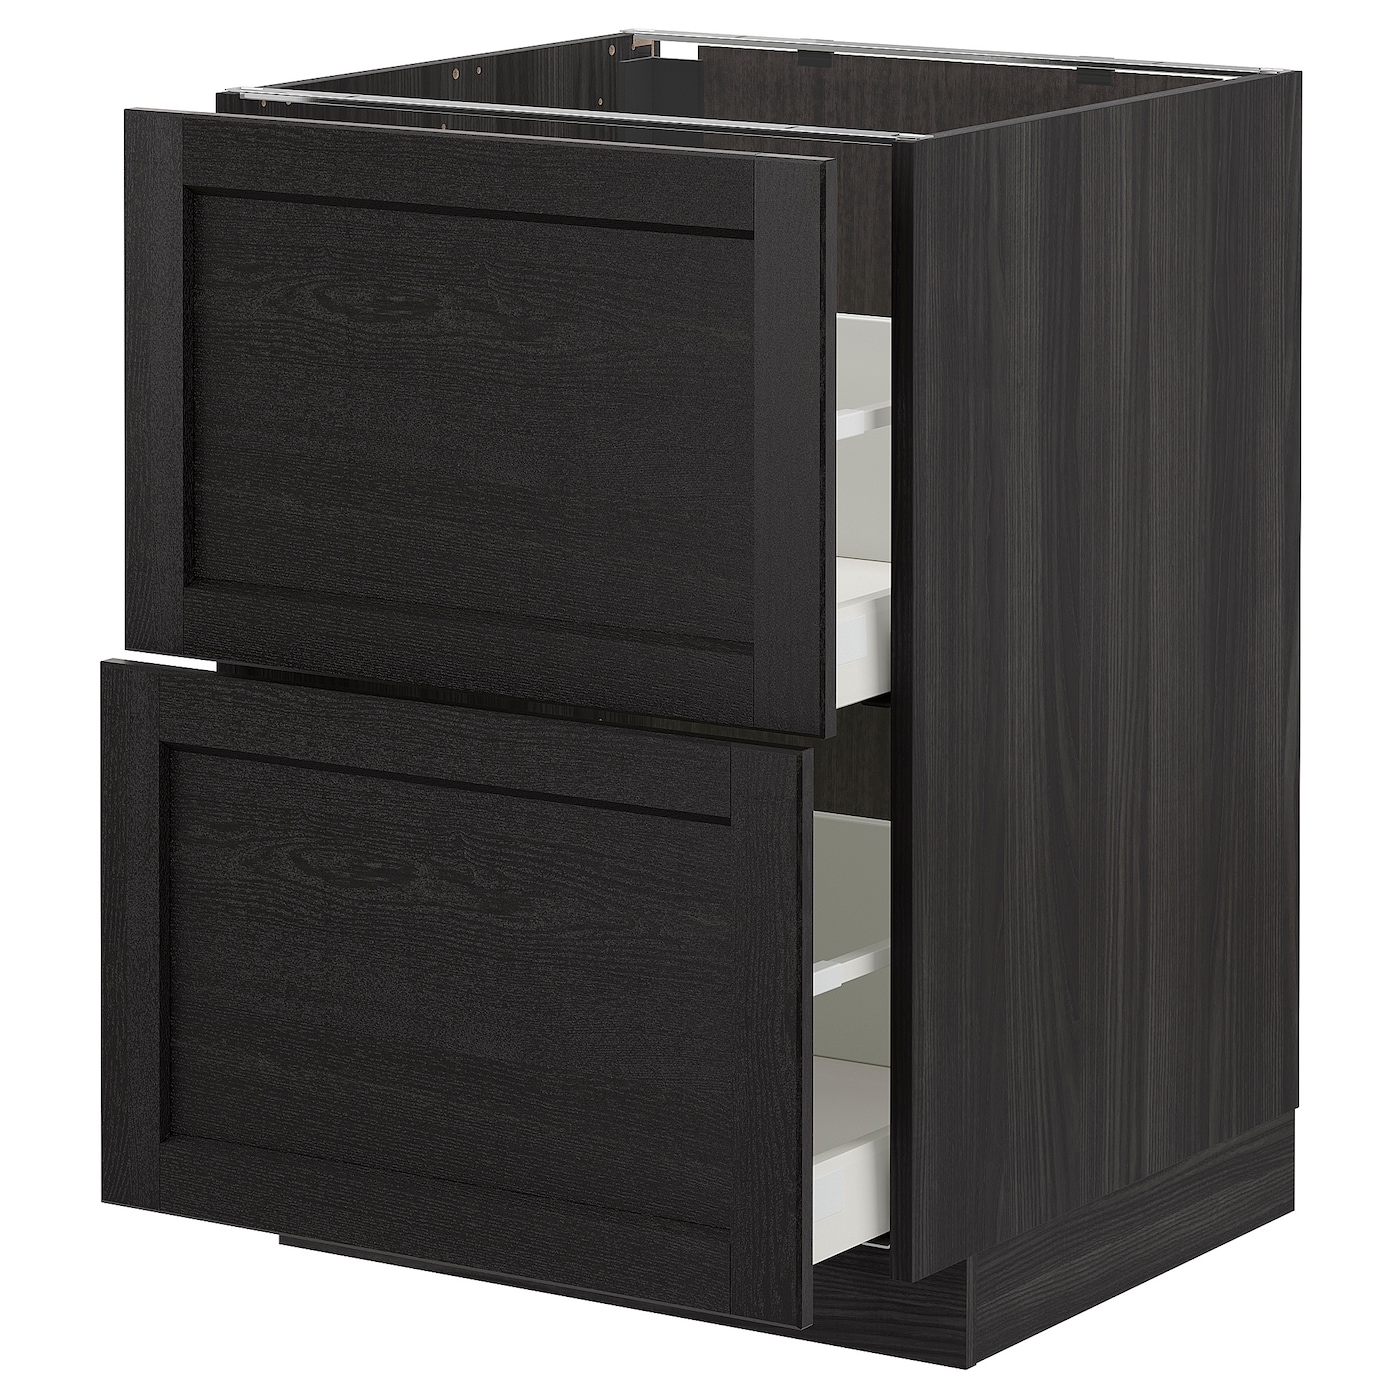 Напольный кухонный шкаф  - IKEA METOD MAXIMERA, 88x62x60см, черный, МЕТОД МАКСИМЕРА ИКЕА